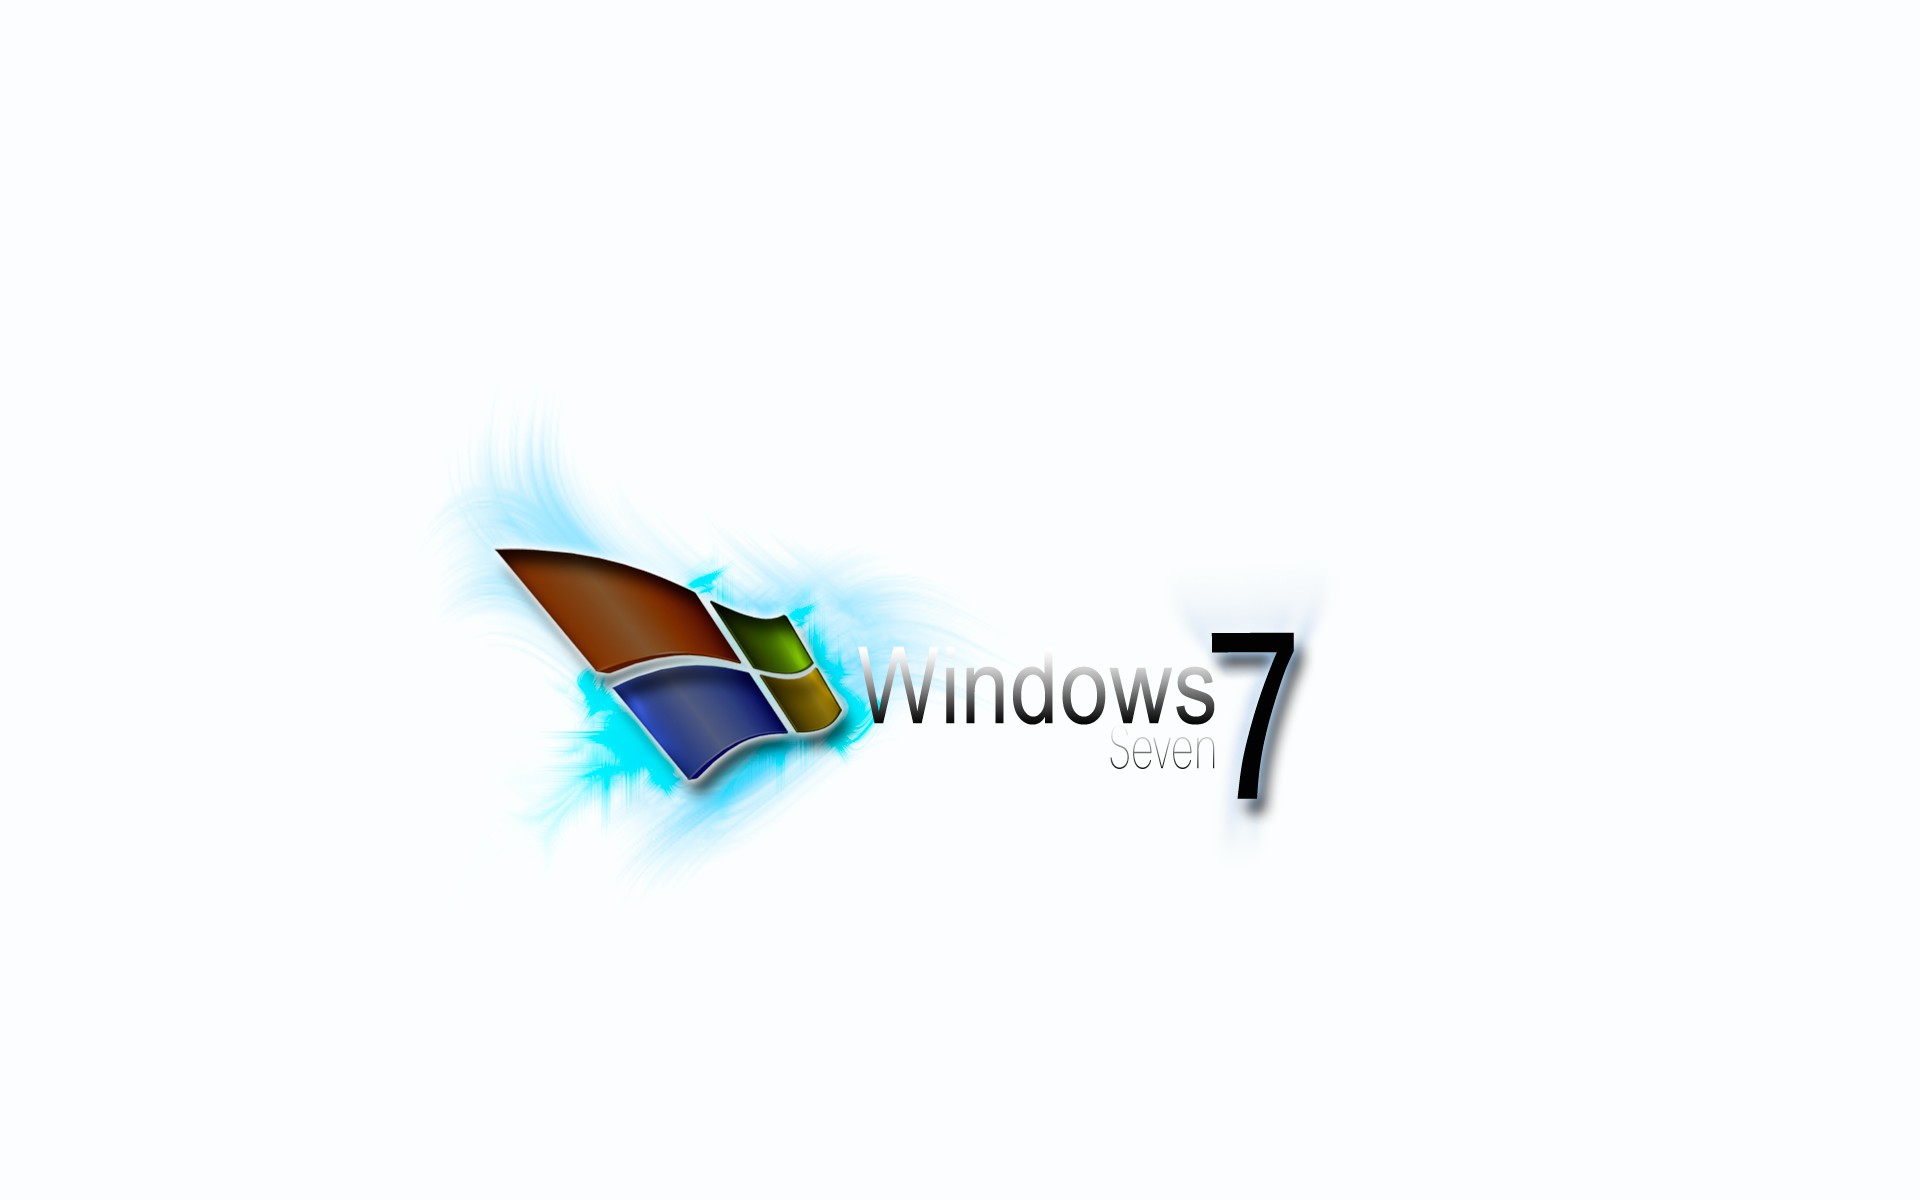 50 Great Windows 7 Fan Wallpapers - Gallery 14 - EN - download ...